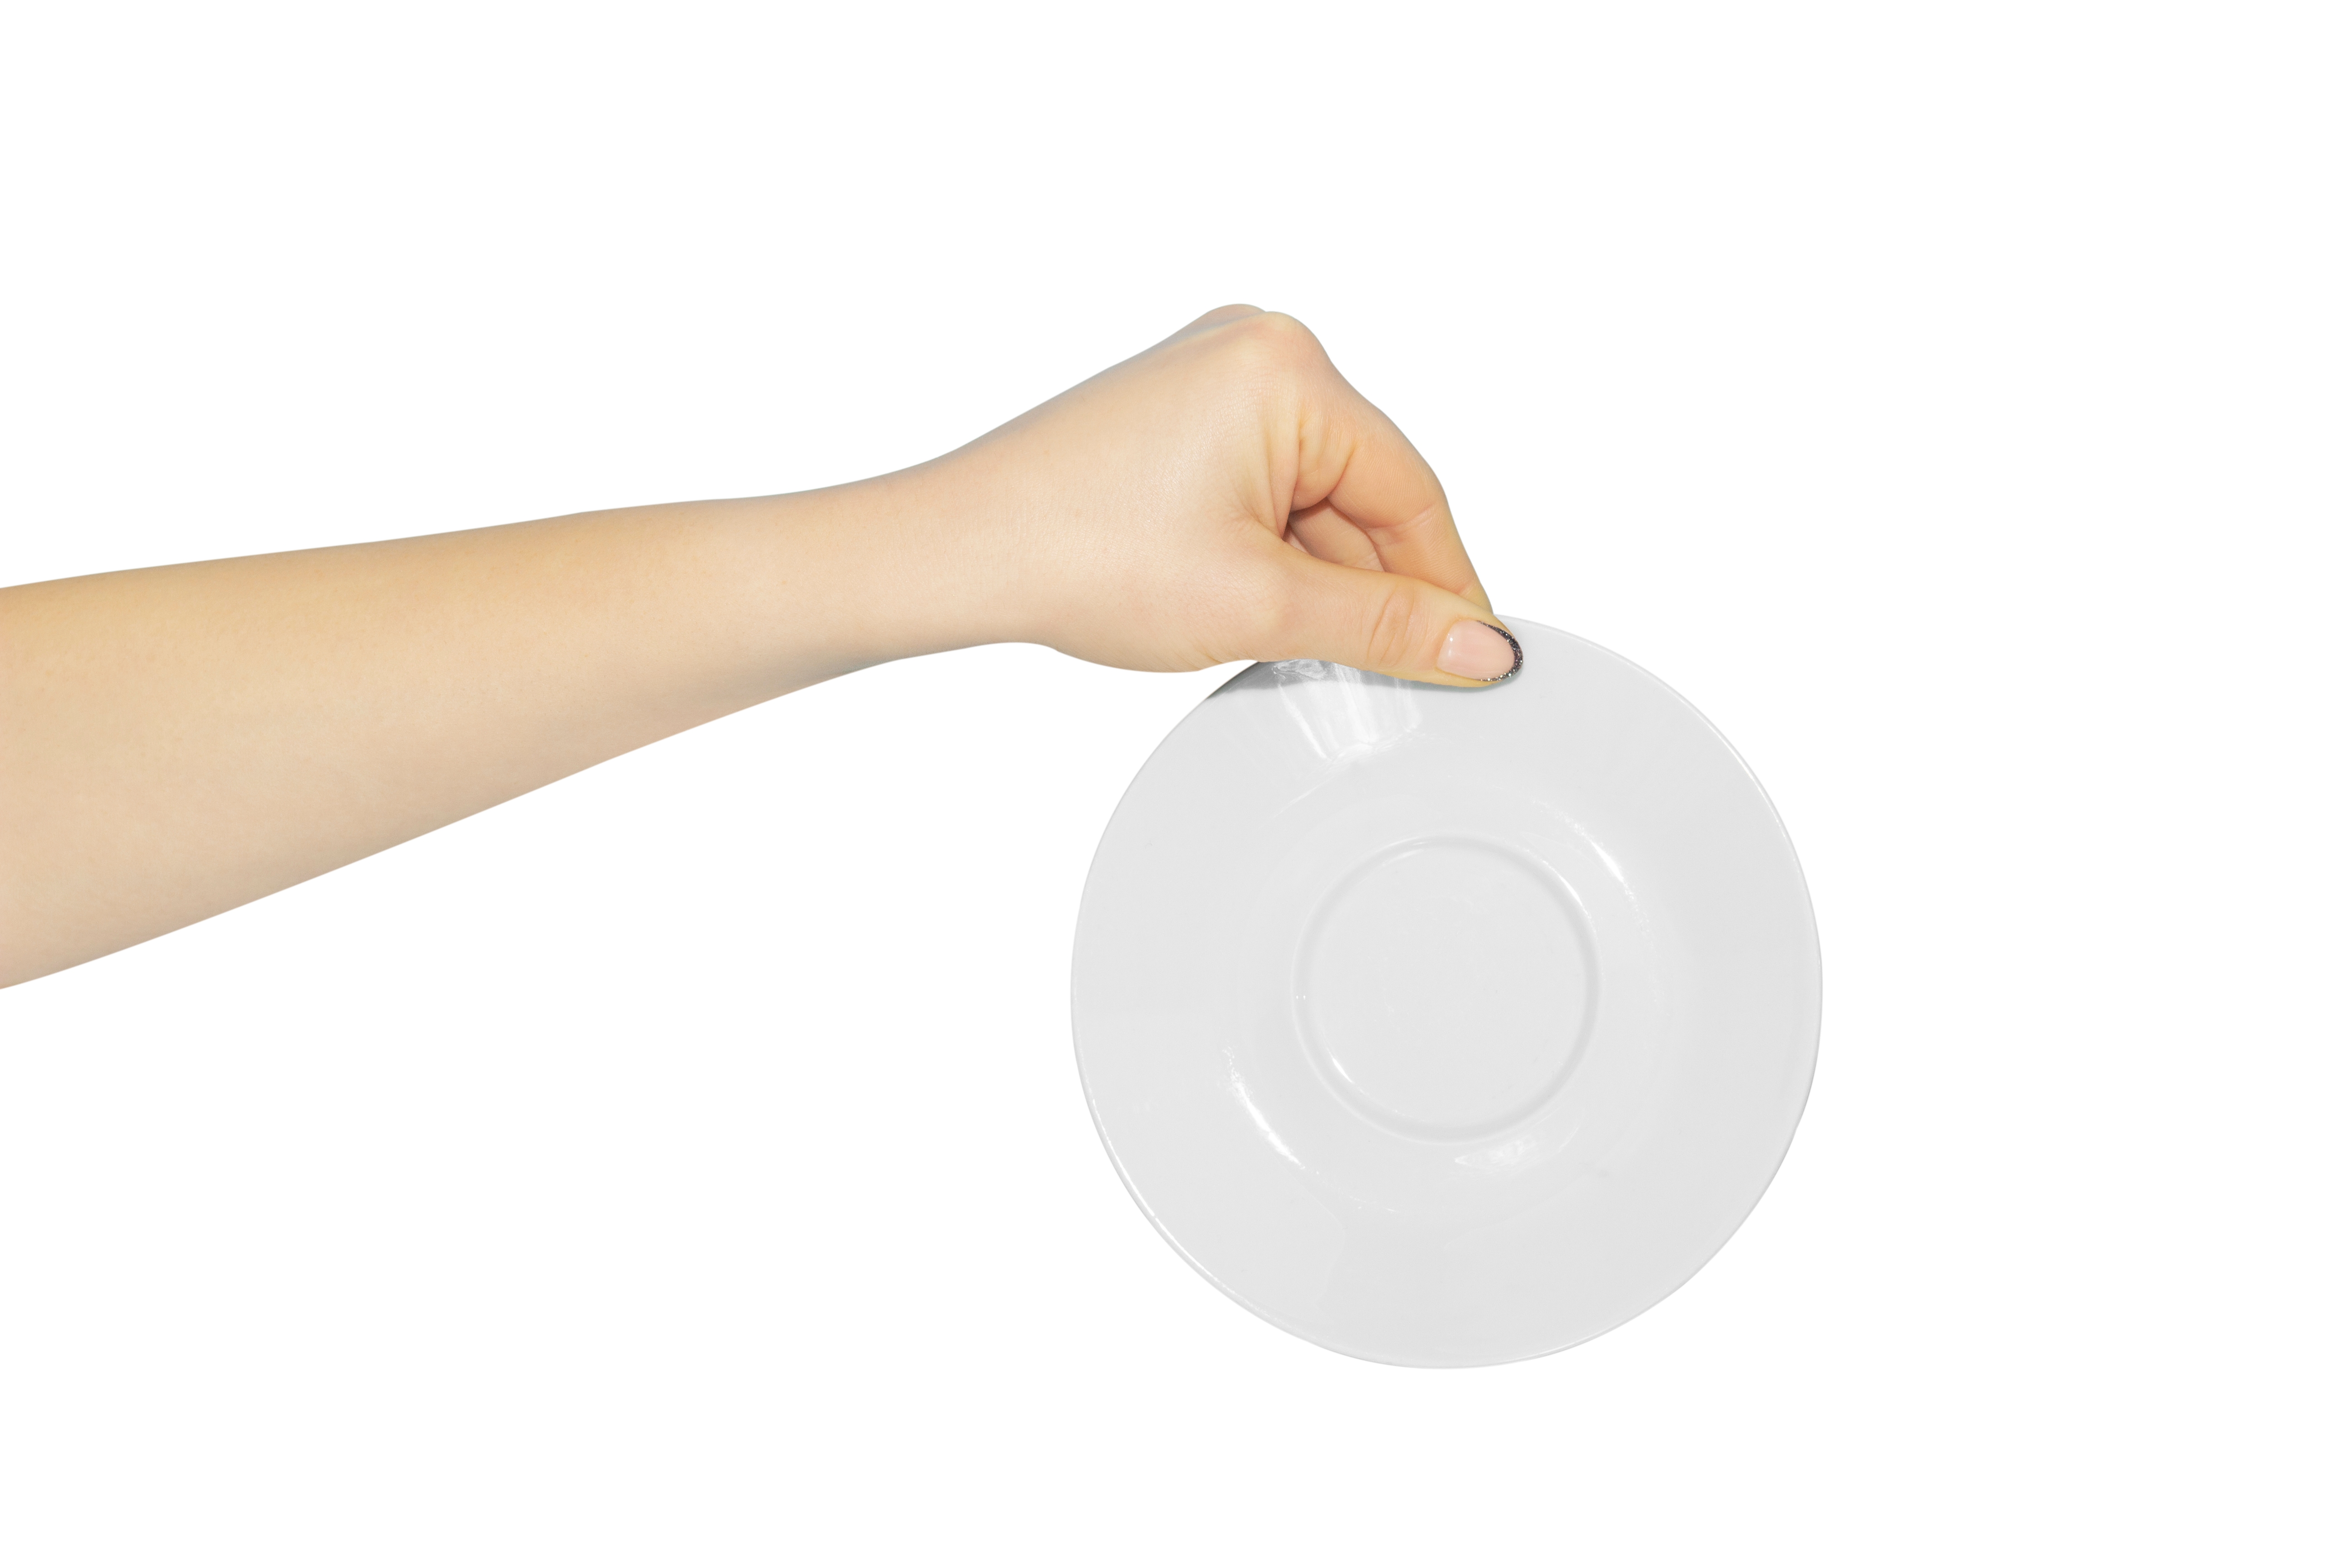 A woman's hand holding a saucer | Source: Shutterstock